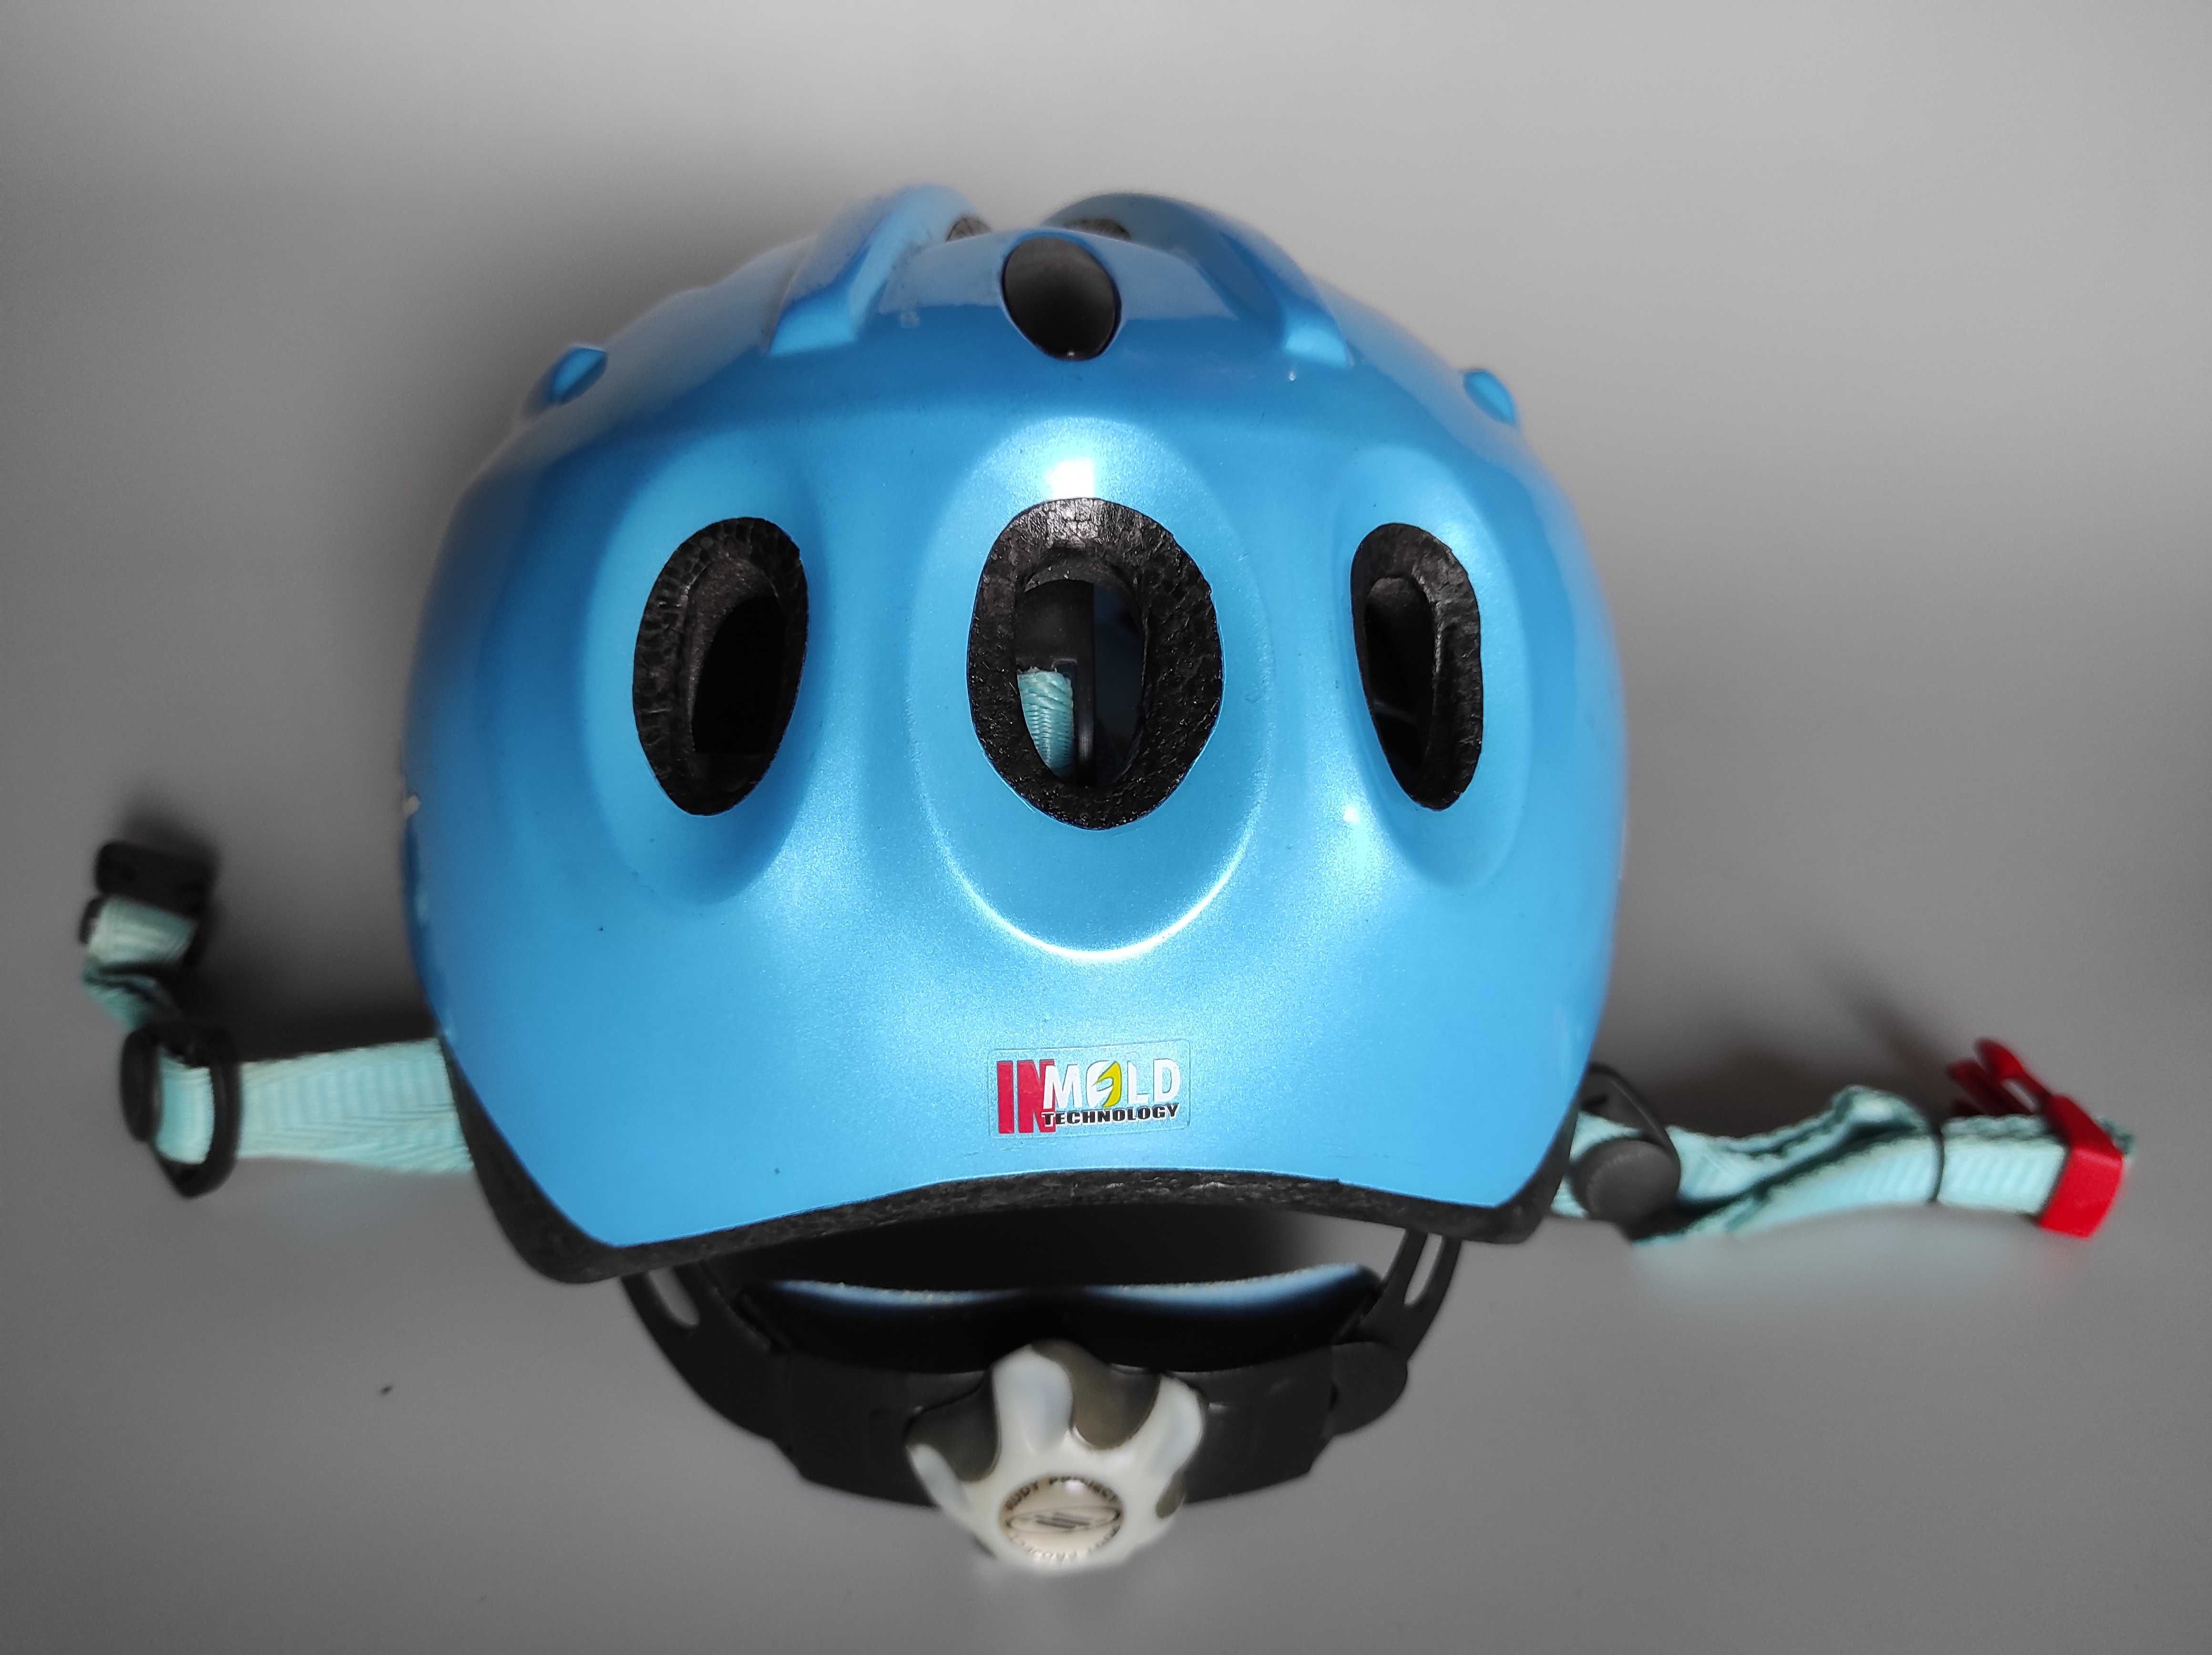 Детский защитный шлем Rudy Project, размер S 46-54см, велосипедный